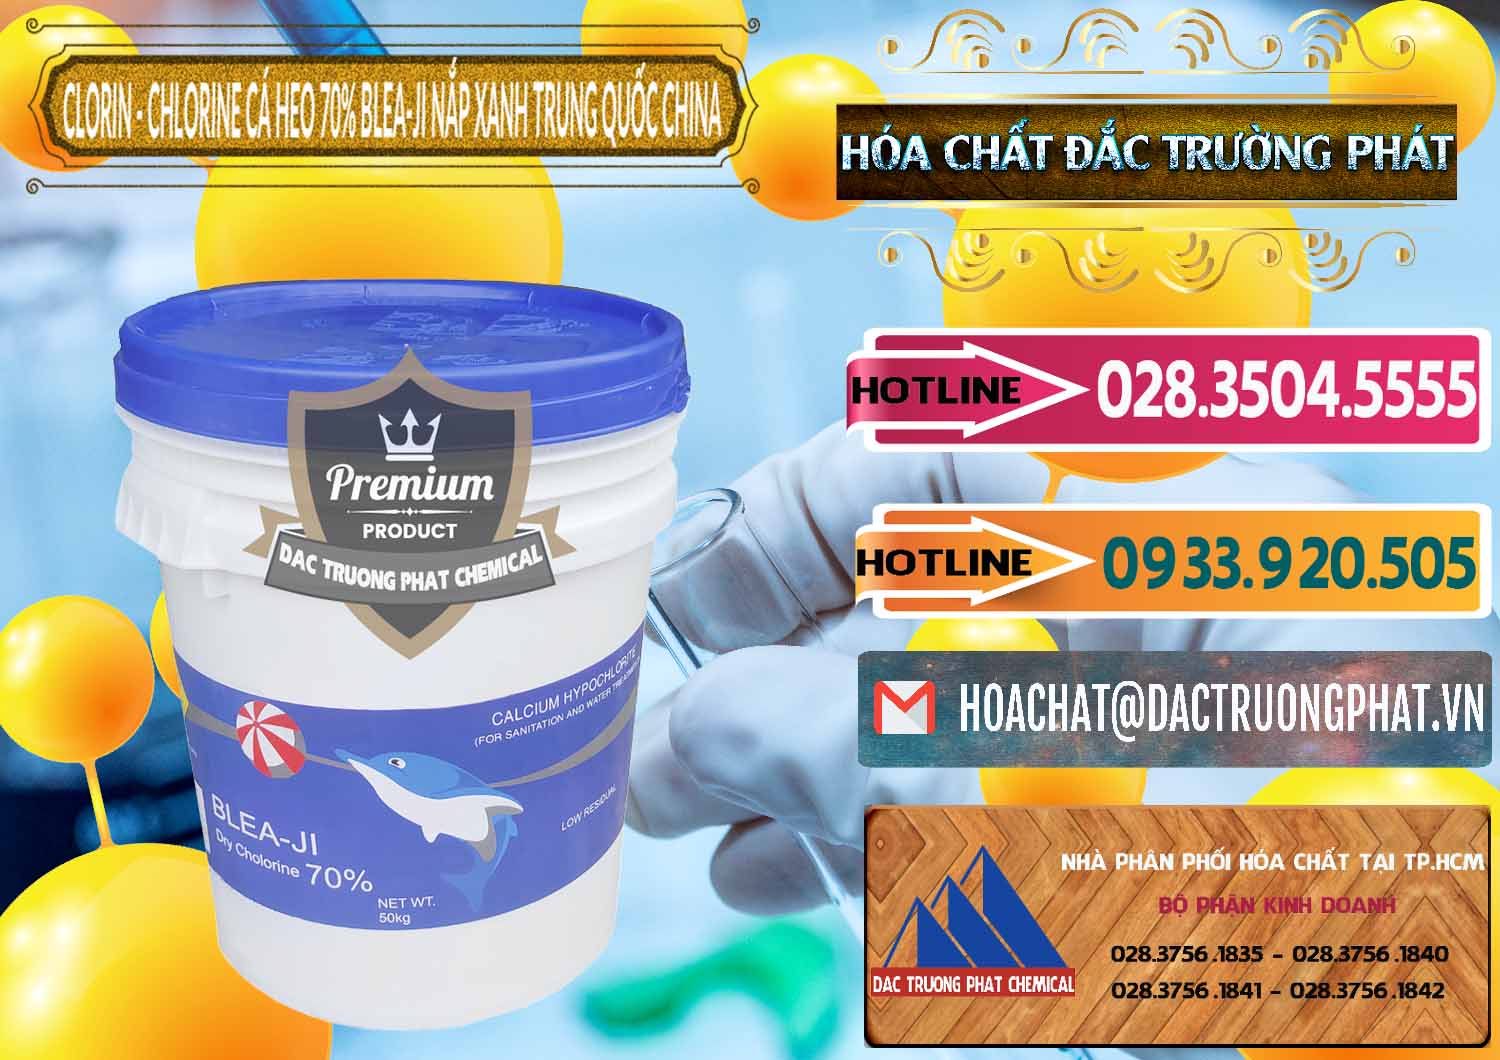 Cty phân phối & bán Clorin - Chlorine Cá Heo 70% Cá Heo Blea-Ji Thùng Tròn Nắp Xanh Trung Quốc China - 0208 - Cty phân phối & nhập khẩu hóa chất tại TP.HCM - dactruongphat.vn